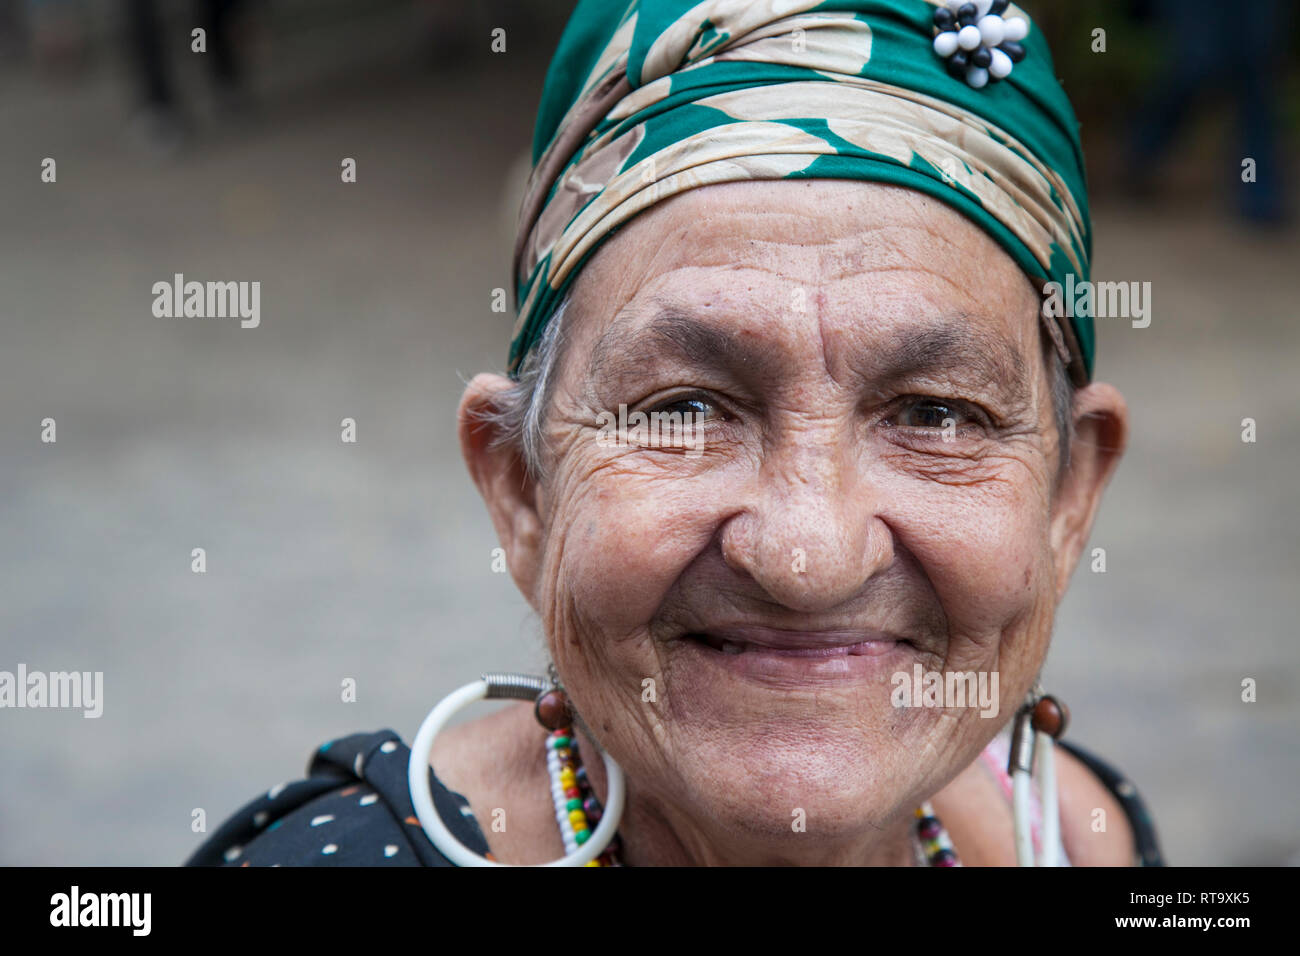 L'Avana, Cuba - 24 Gennaio 2013: Ritratti del popolo cubano in abiti tradizionali. Una donna anziana con il velo di colore verde. Foto Stock